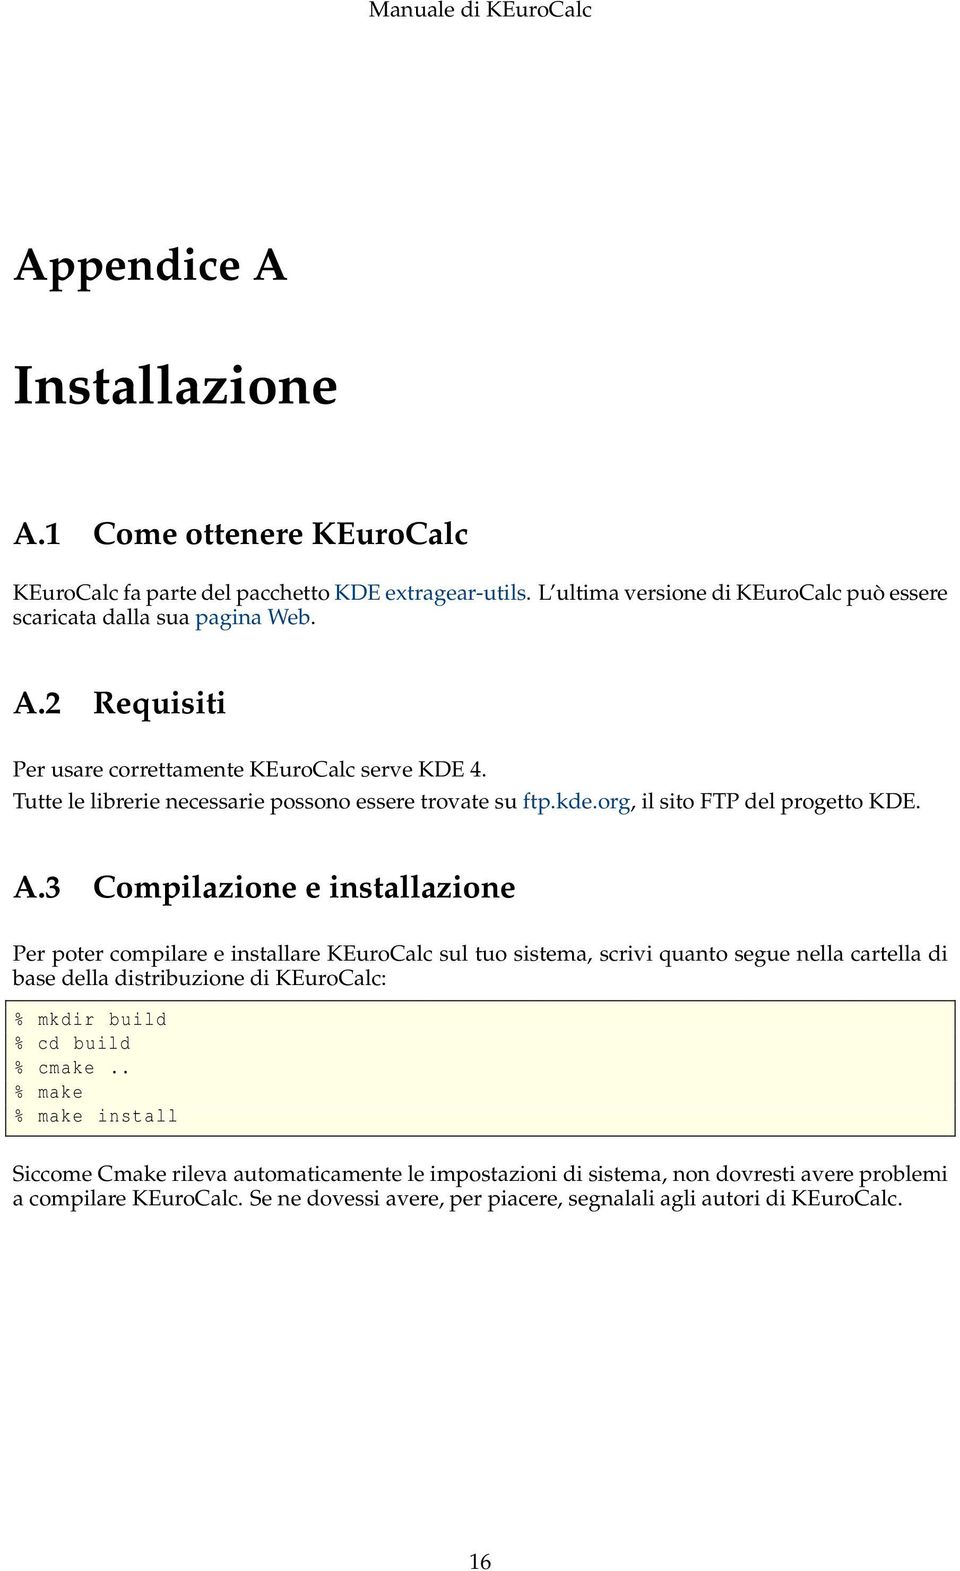 3 Compilazione e installazione Per poter compilare e installare KEuroCalc sul tuo sistema, scrivi quanto segue nella cartella di base della distribuzione di KEuroCalc: % mkdir build % cd